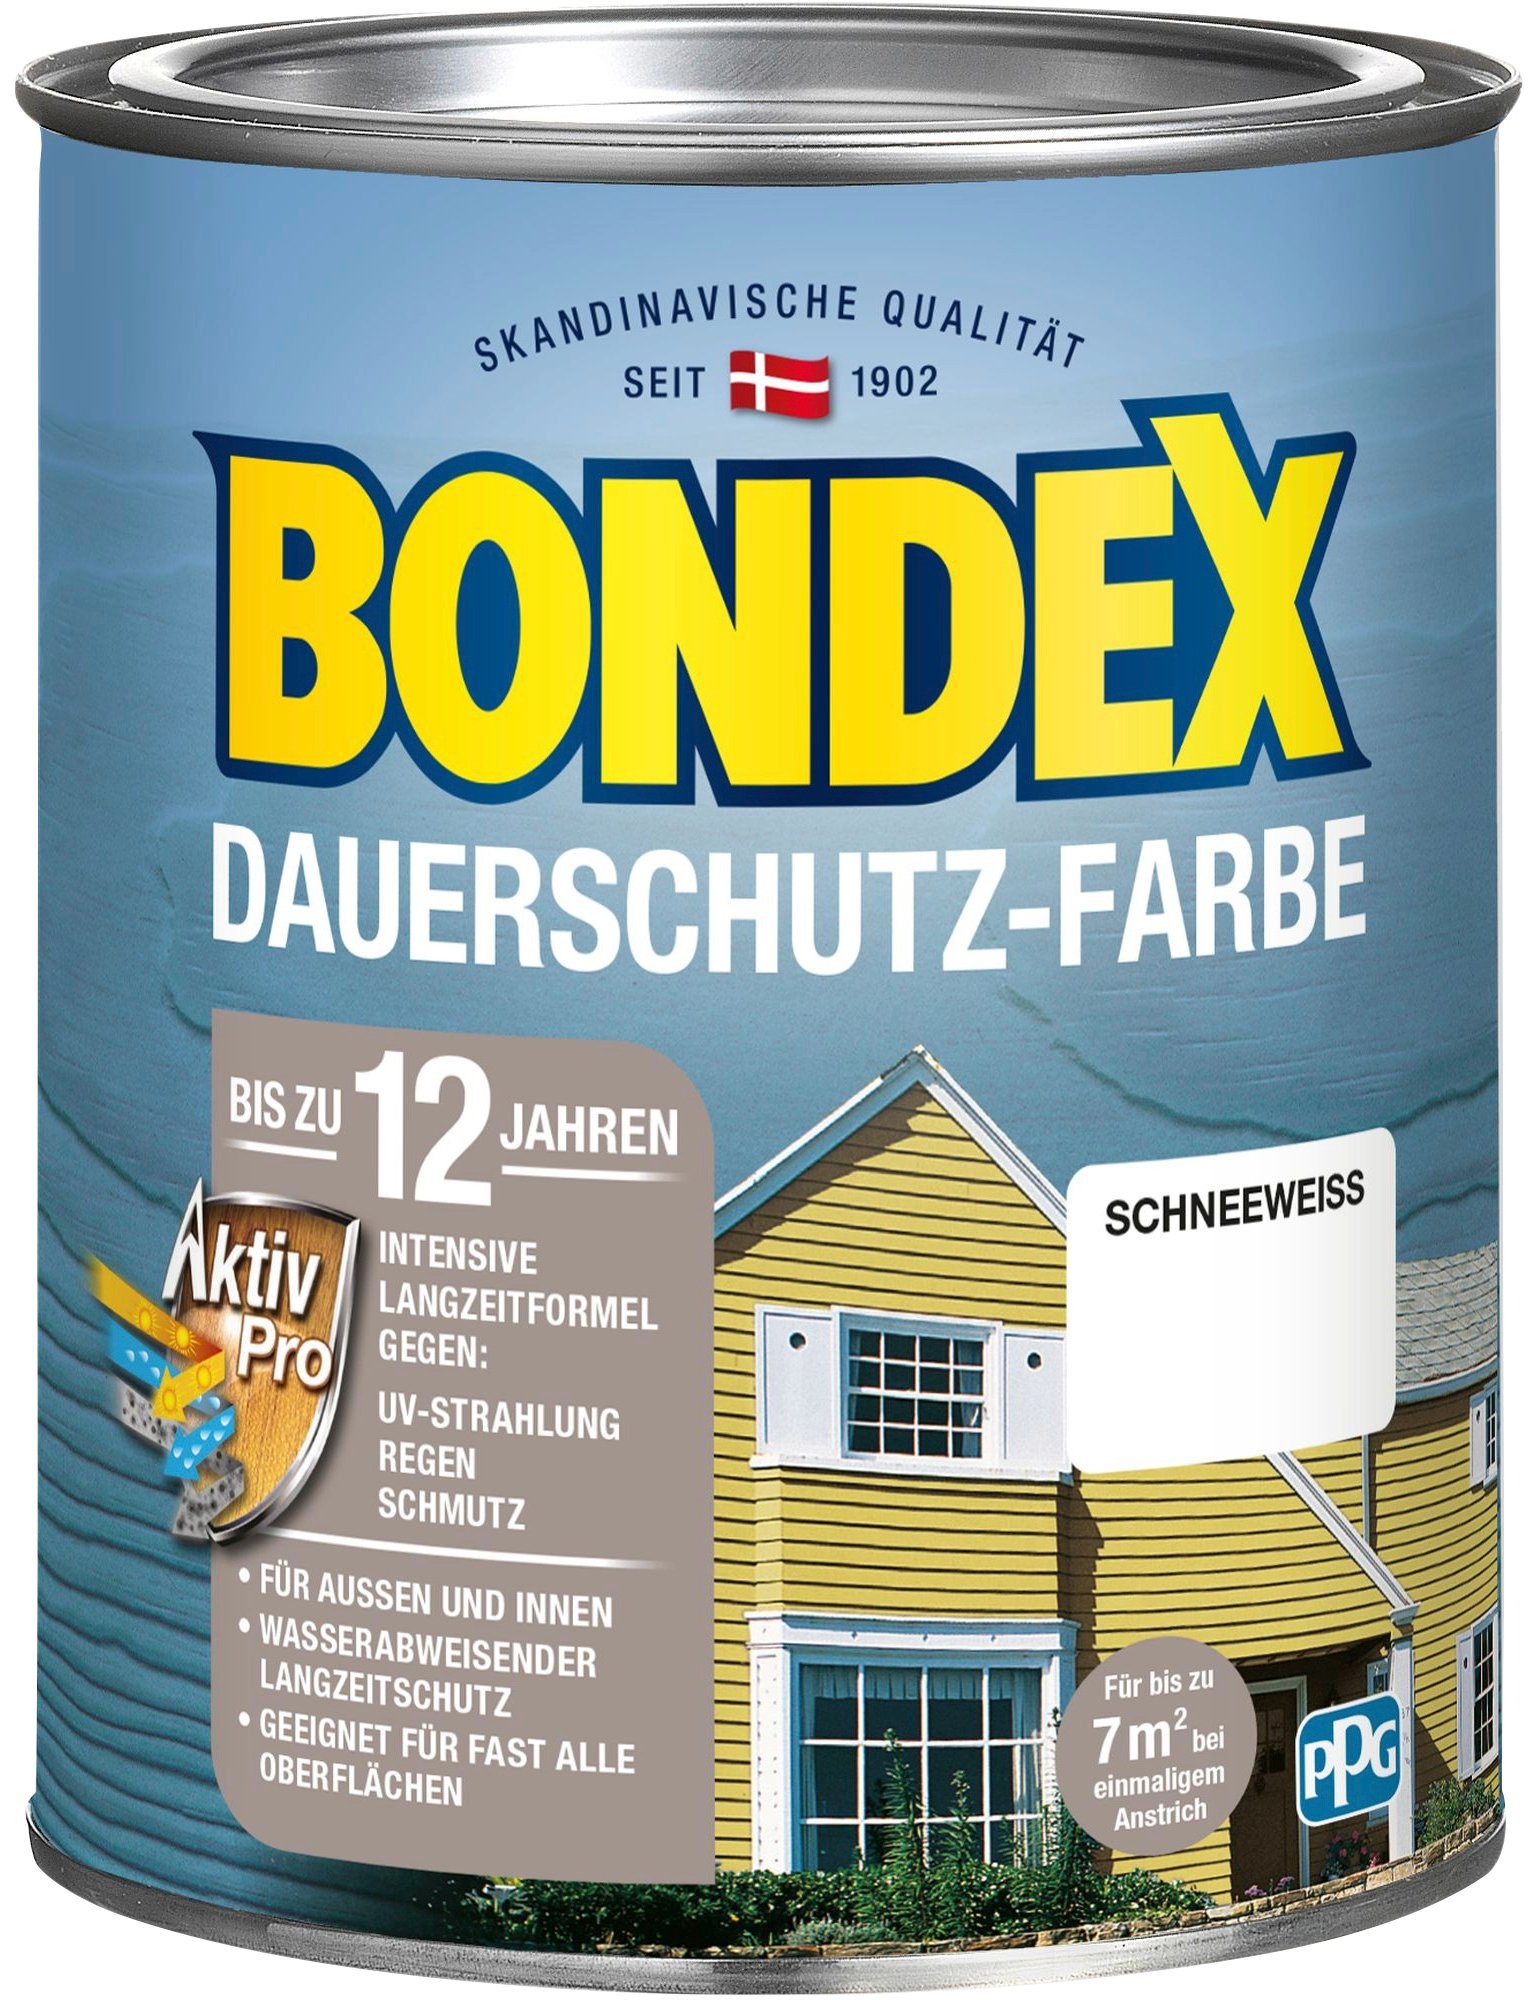 Bondex Wetterschutzfarbe DAUERSCHUTZ-FARBE, für Außen und Innen, Wetterschutz mit Aktiv Pro Langzeitformel Schneeweiß